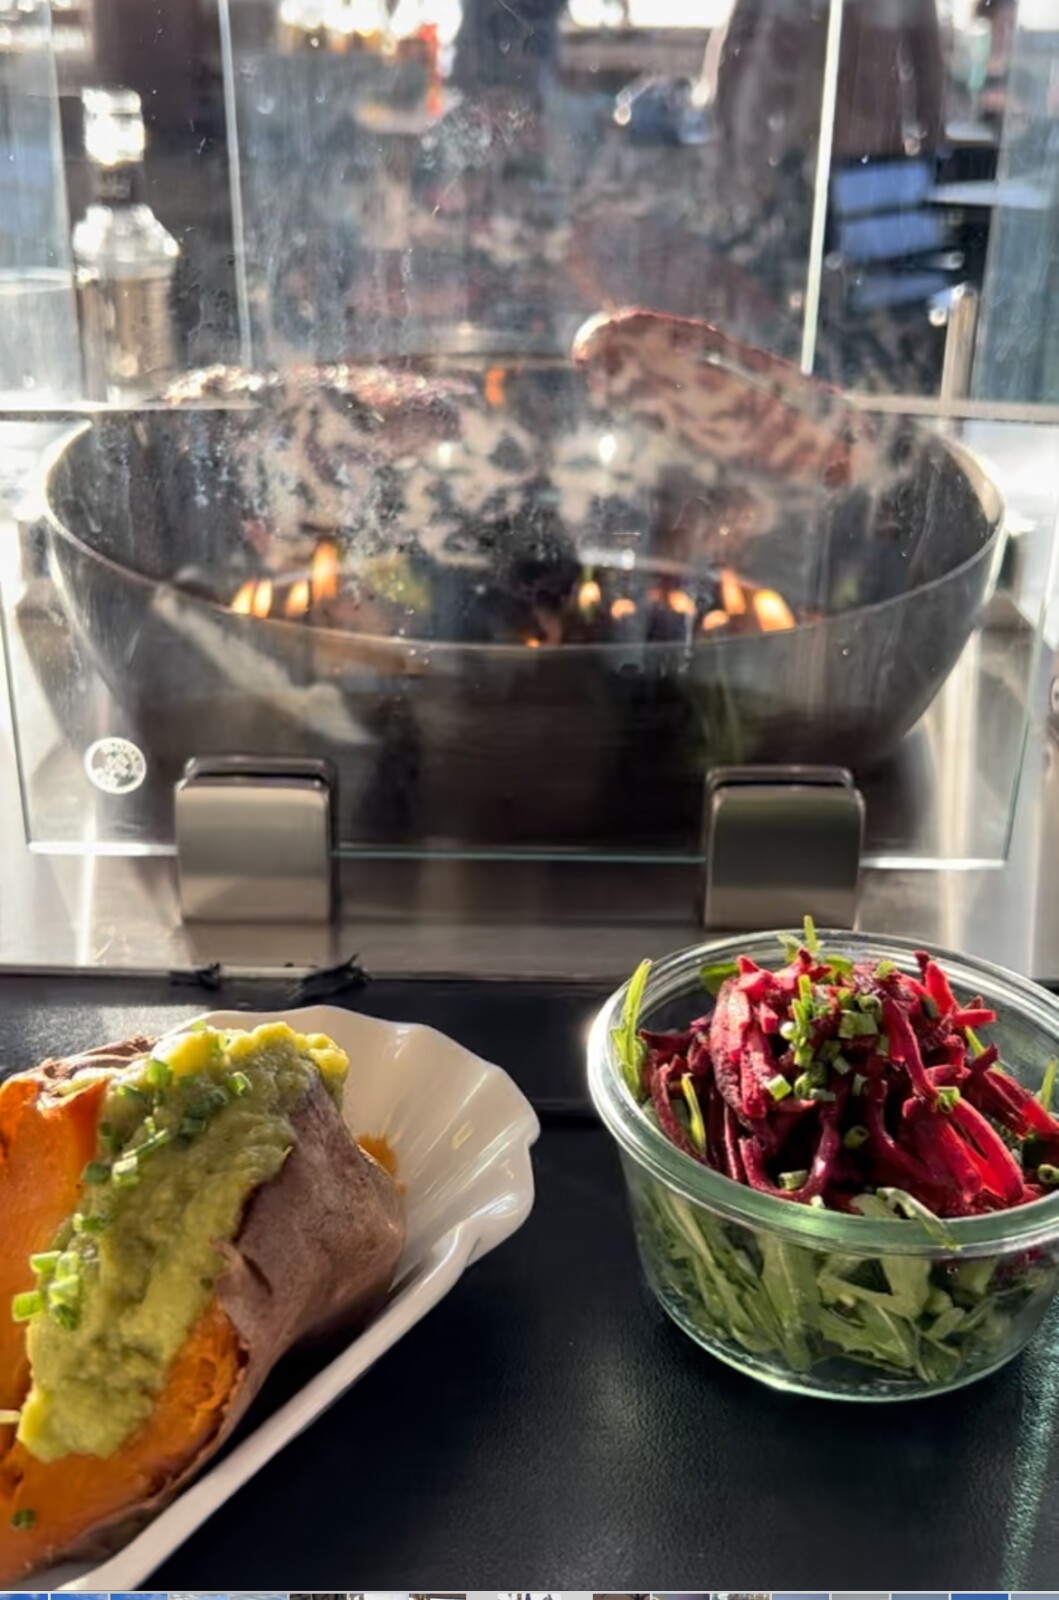 Im iismeer auf Sylt kannst du dir deinen veganen Burgerpatty slebst grillen und hast dazu einige vegane Beilagen wie Salate, Gemüse und Pommes zur Auswahl